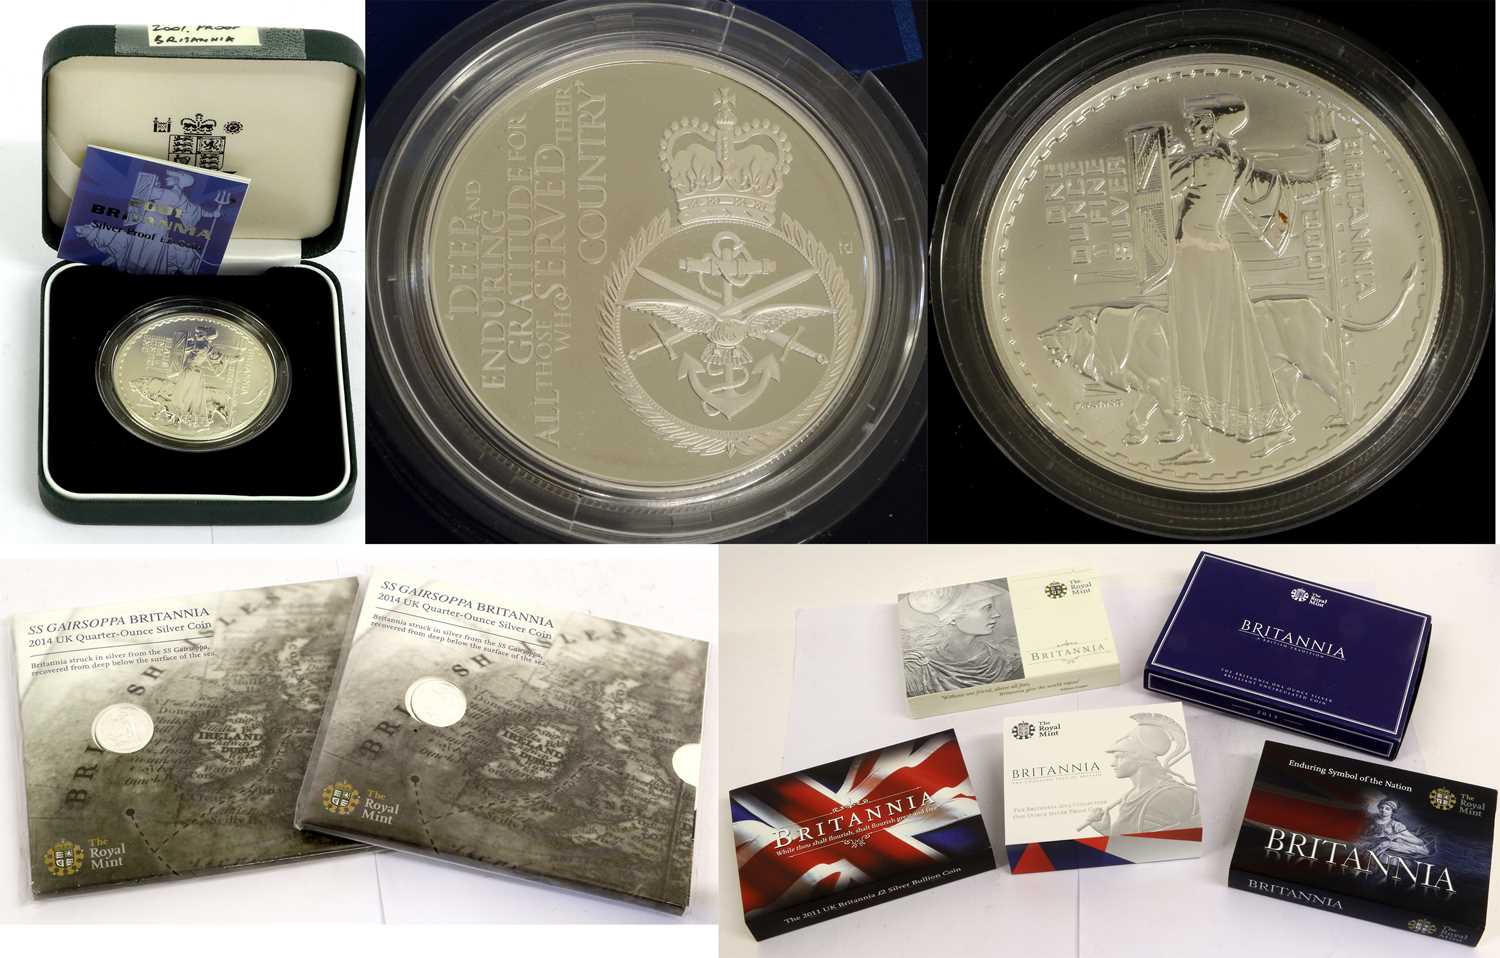 8 x UK Silver Britannias, comprising: 2 x proof £2 (1oz): 2001 rev. Philip Nathan's design